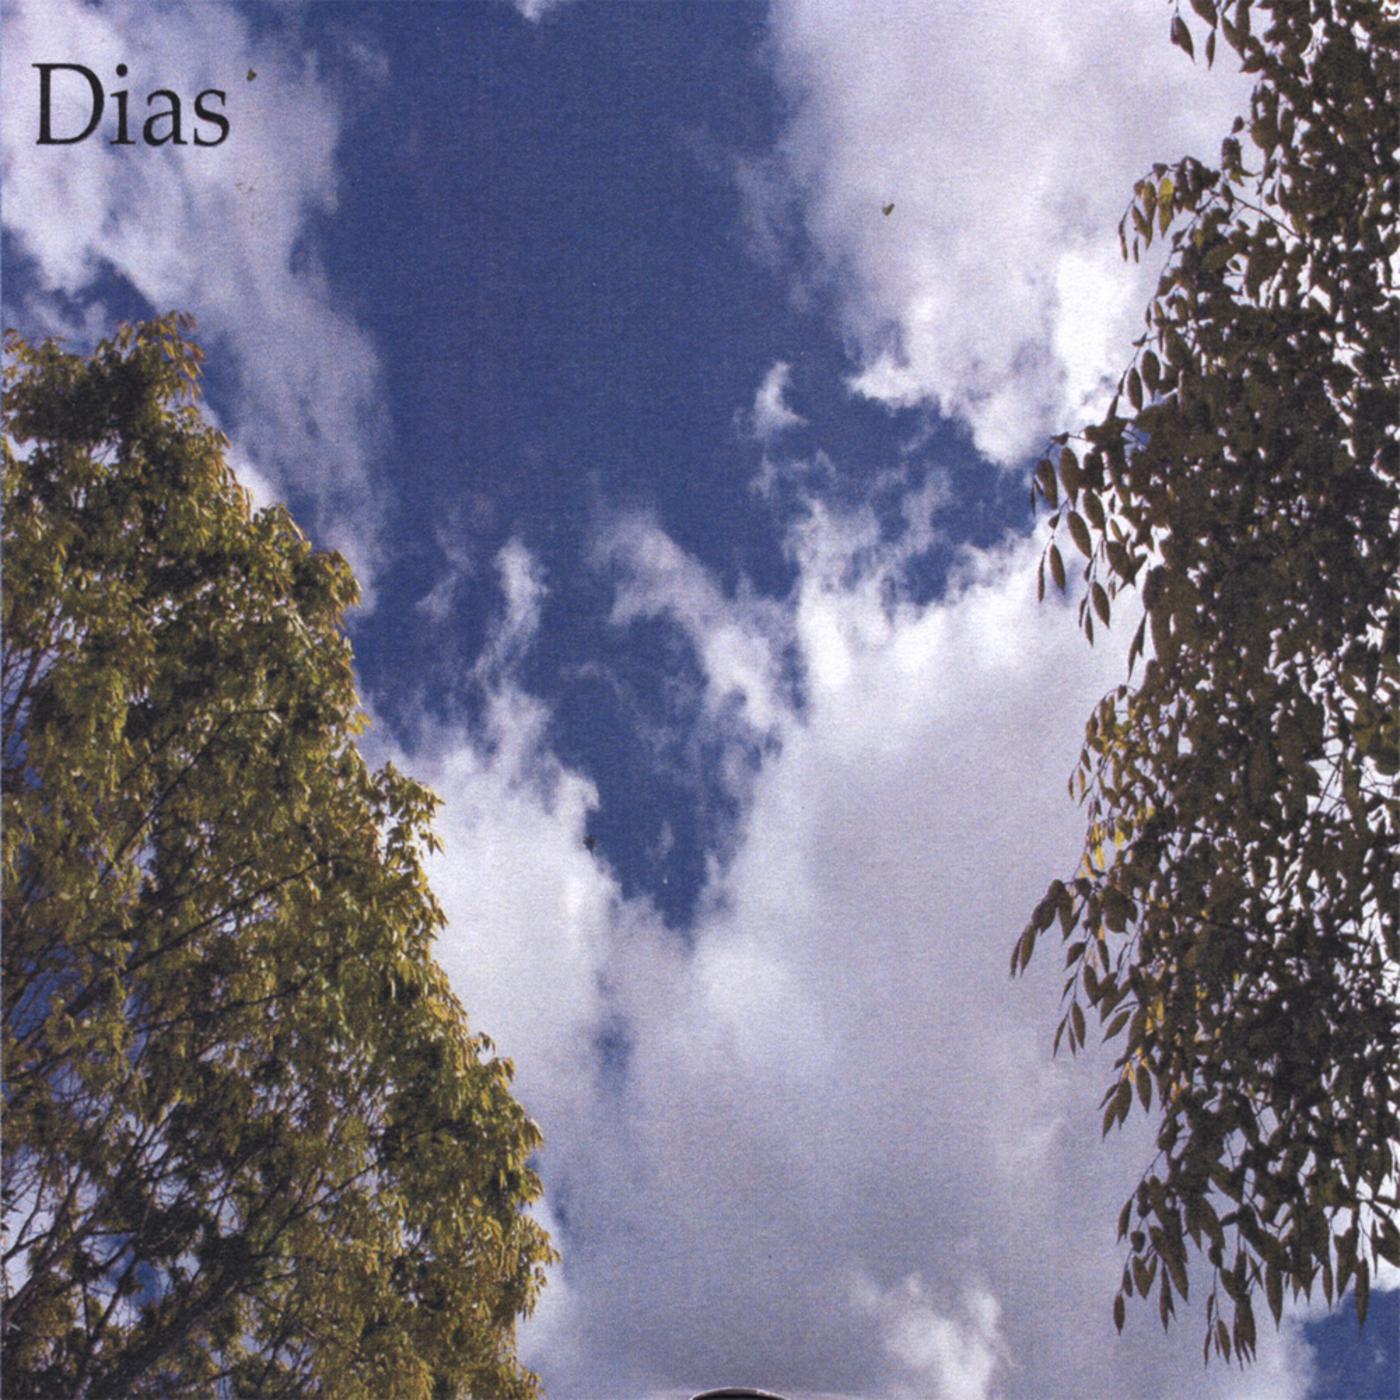 Dias - Pages